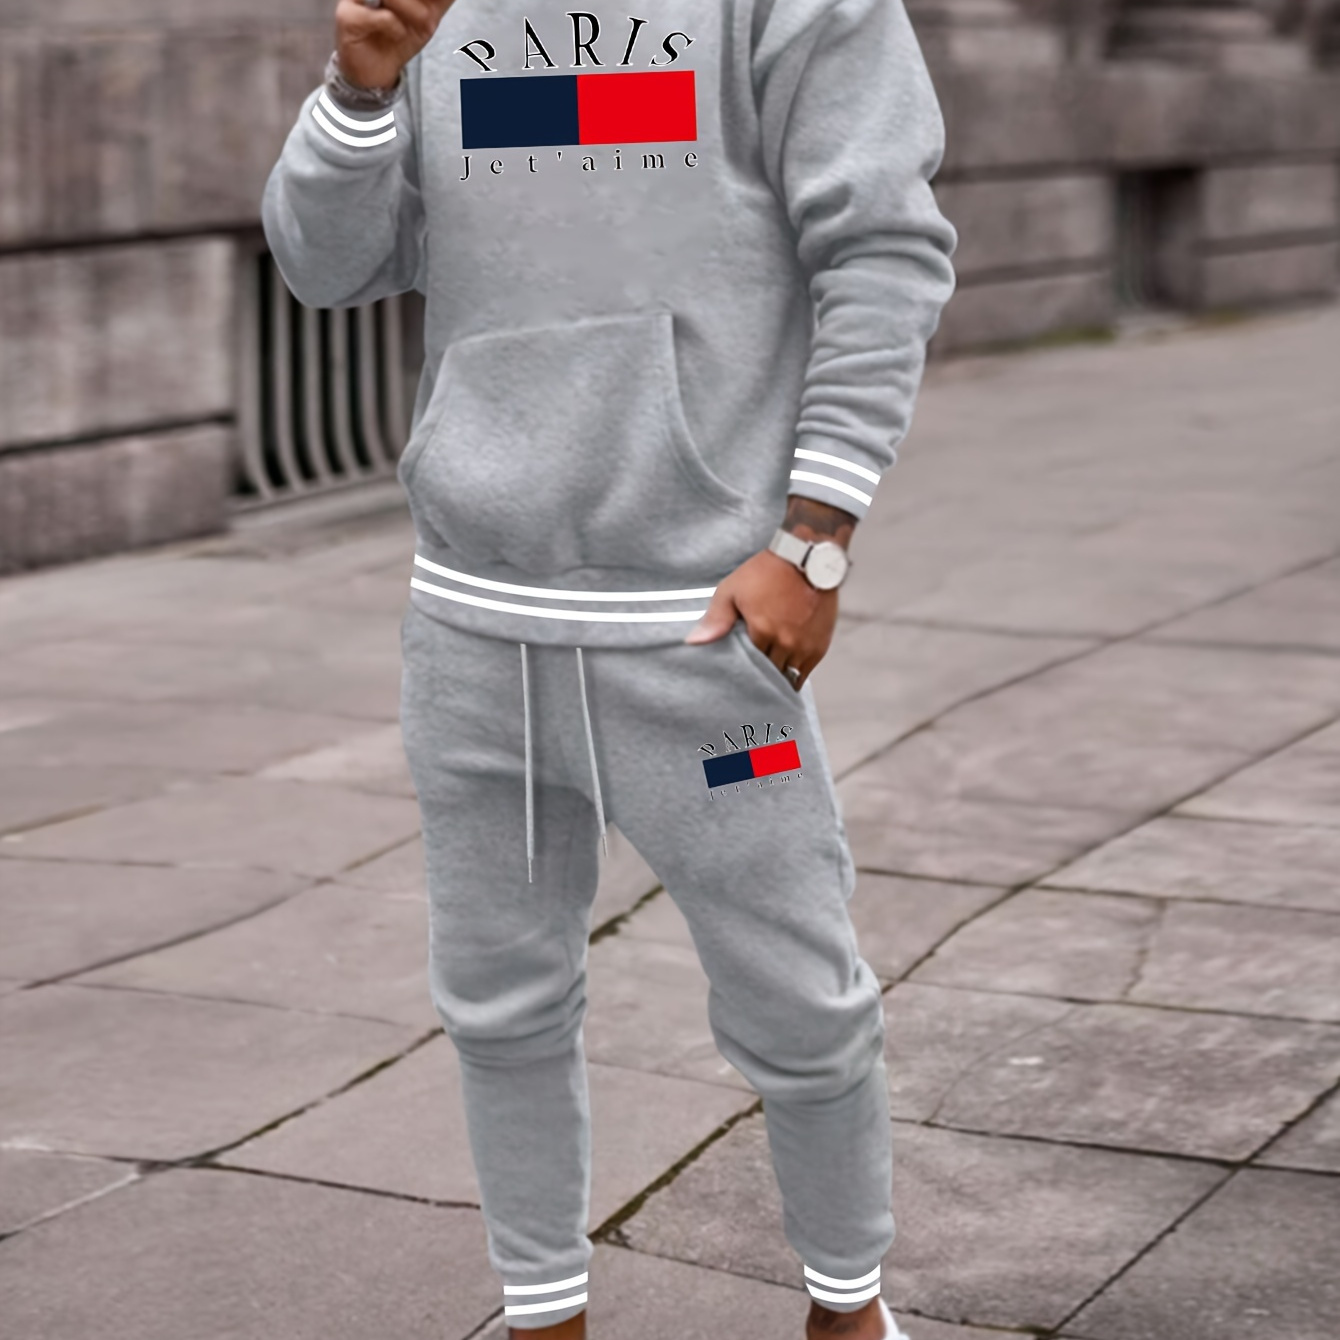 

2-piece Paris Print Men's Spring Fall Sports Outfit Set, Men's Hooded Sweatshirt With Kangaroo Pocket & Drawstring Sweatpants Set